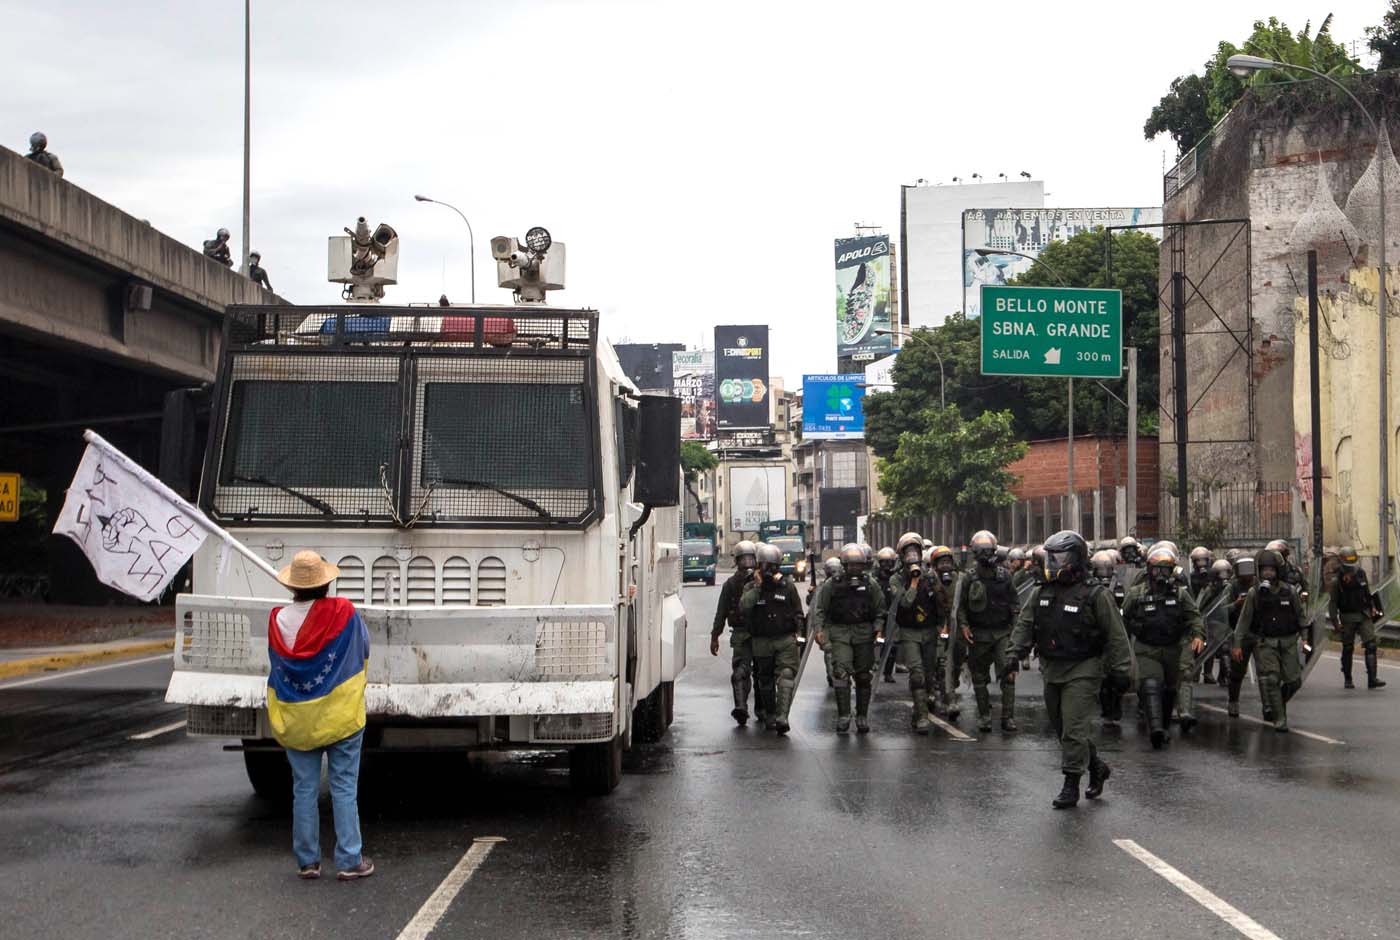 Solo venezolanas marcharán contra el golpe y la represión este #6May hasta el Ministerio del Interior